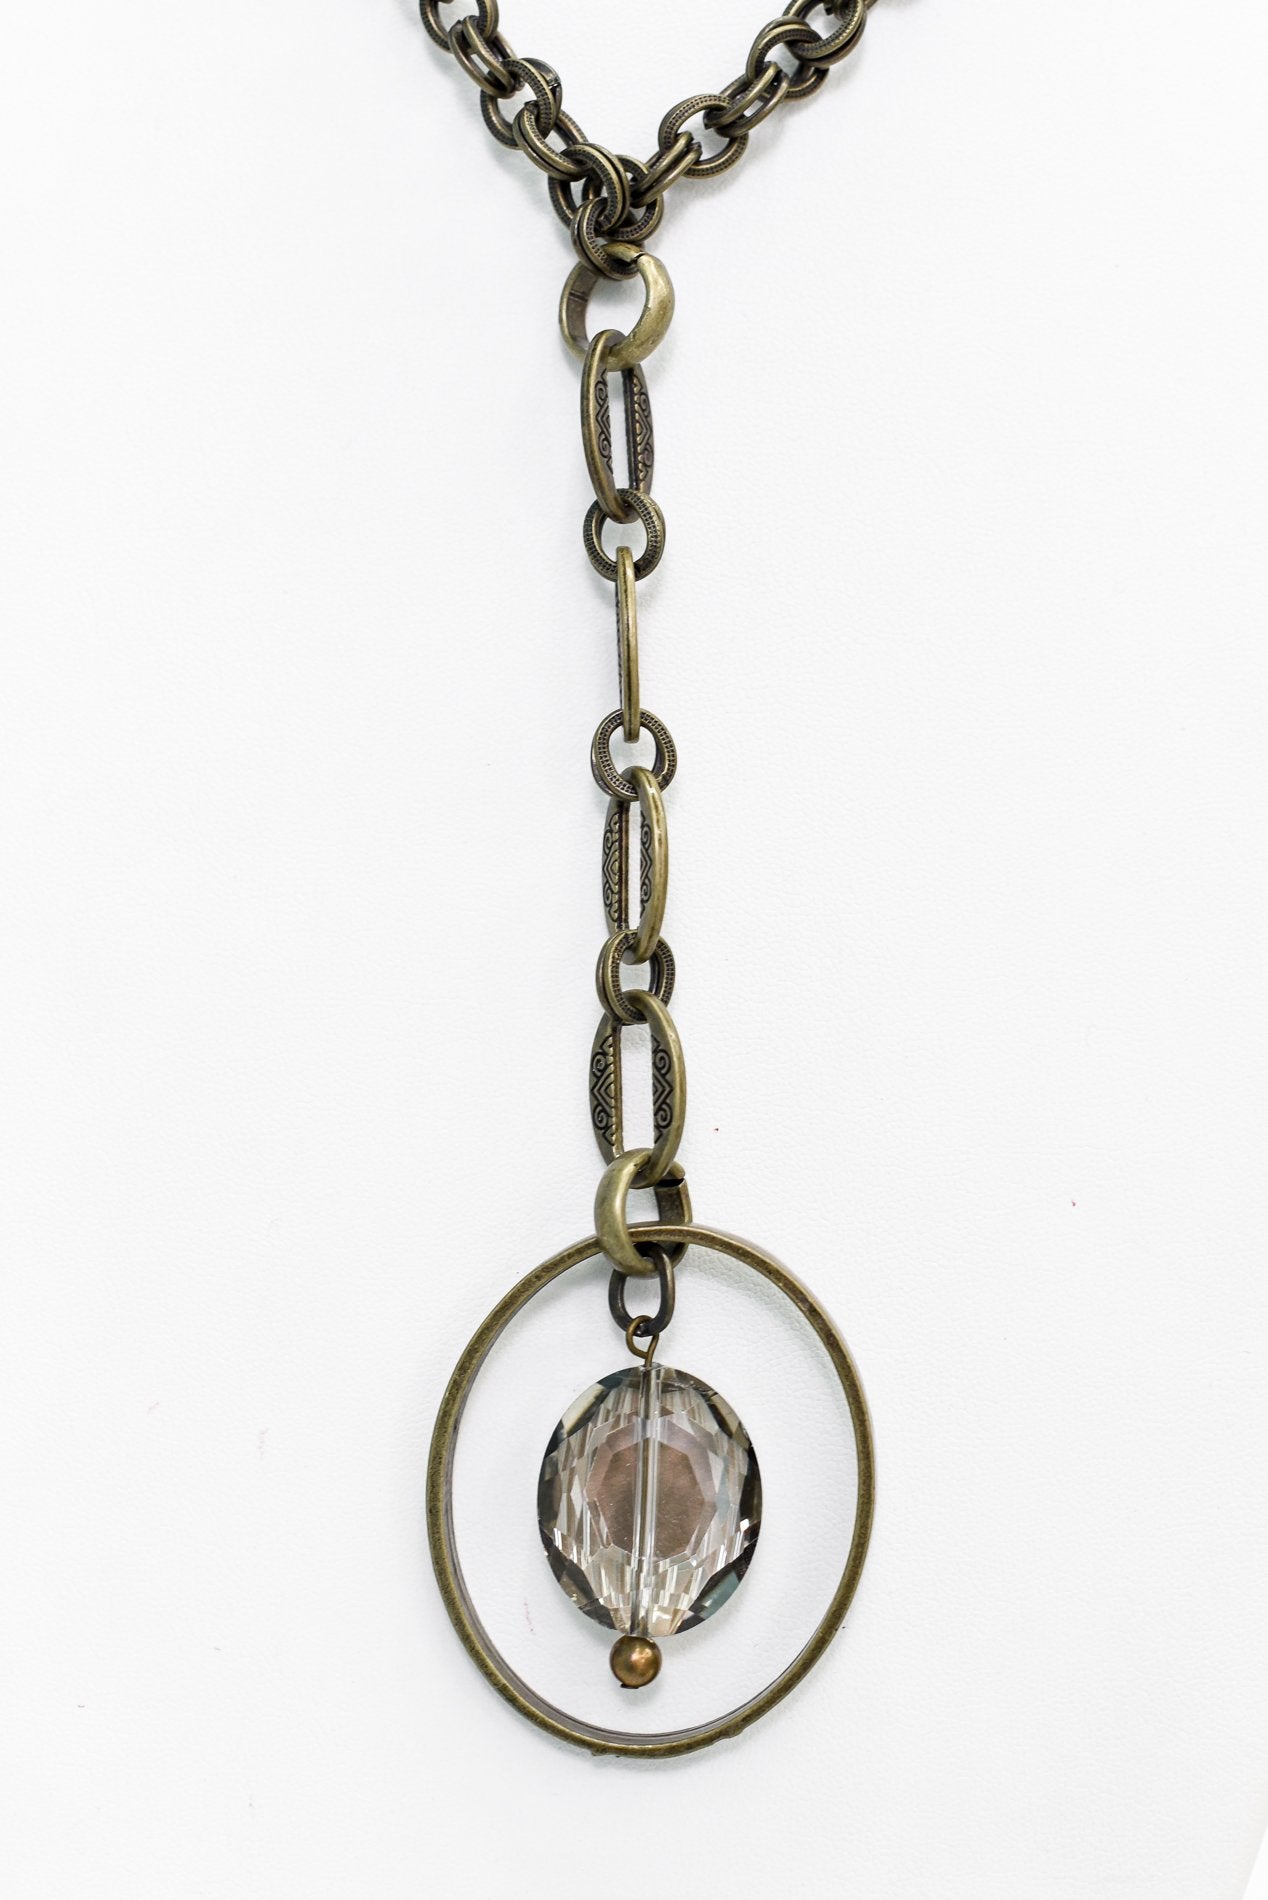 Bronze/Crystal Oval Pedant Necklace - NEK3507BZ